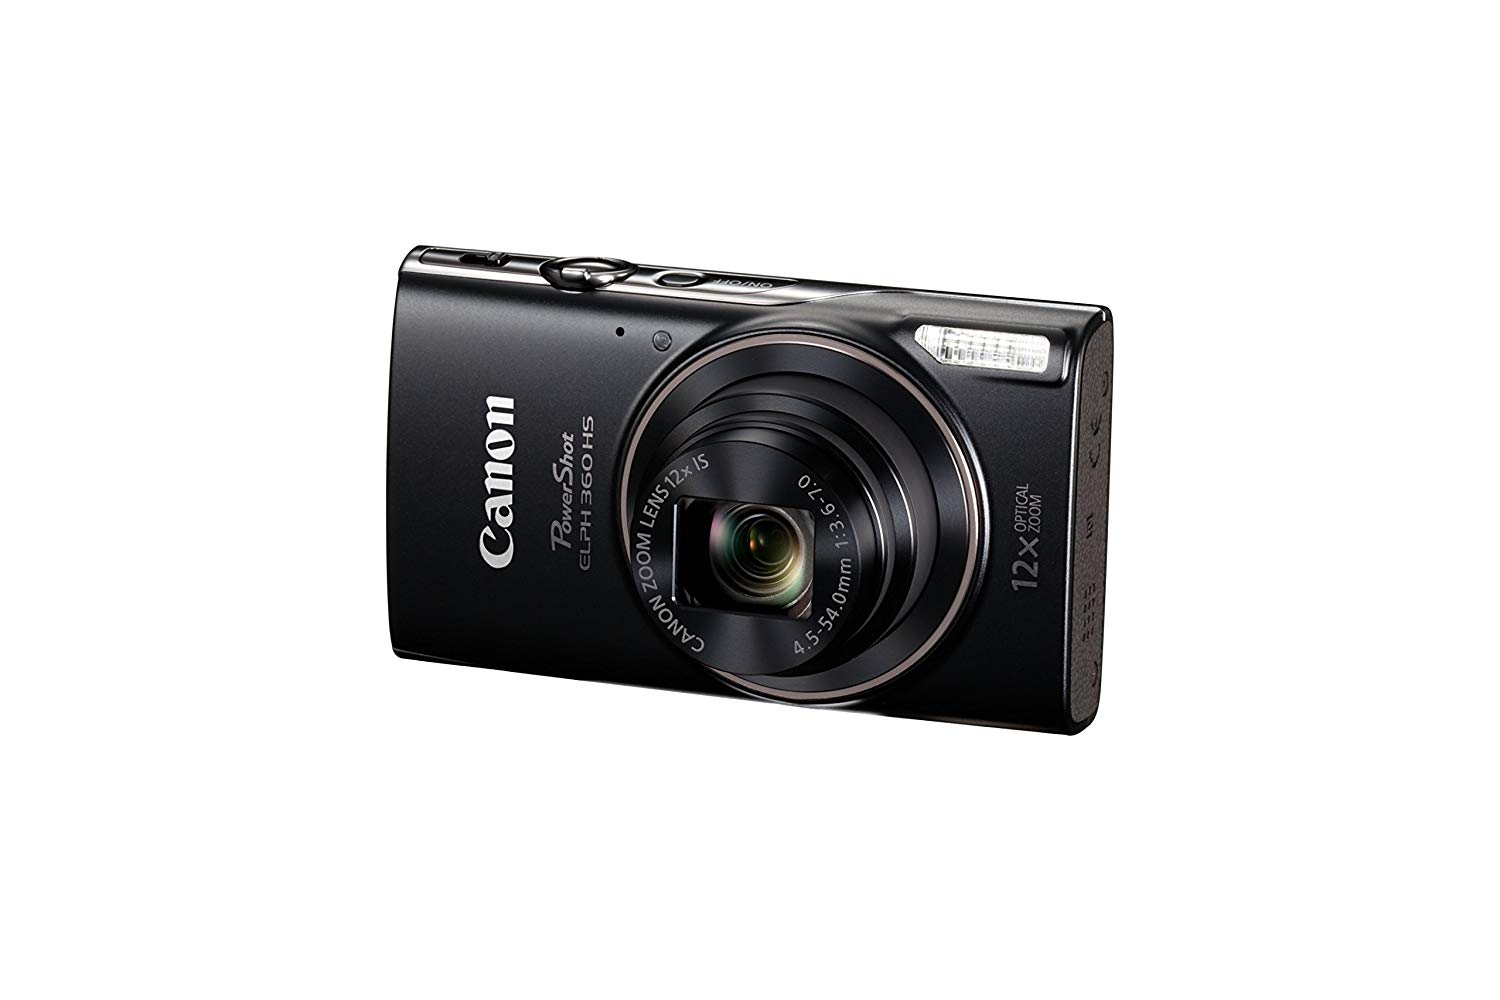 Canon PowerShot ELPH 360 Digitalkamera mit 12-fachem optischen Zoom und Bildstabilisierung - Wi-Fi und NFC aktiviert (schwarz)